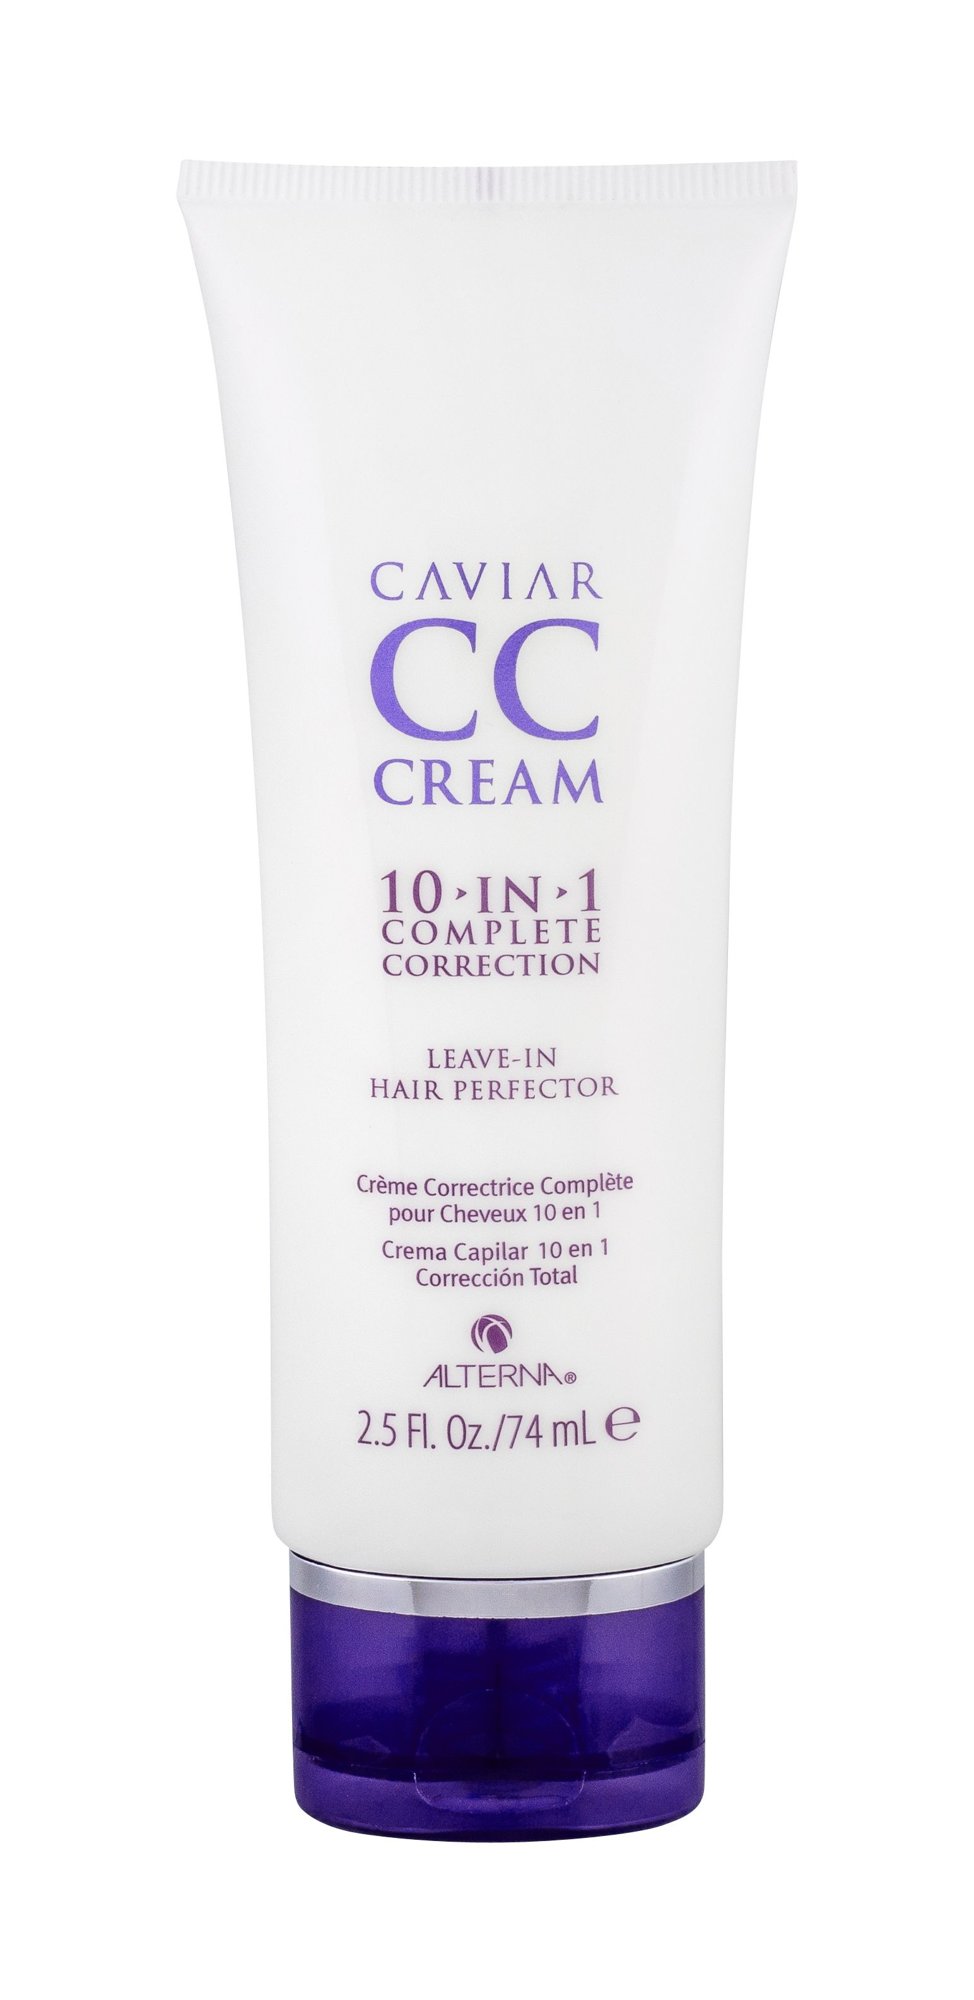 Alterna Caviar CC Cream 10in1 Complete Correction